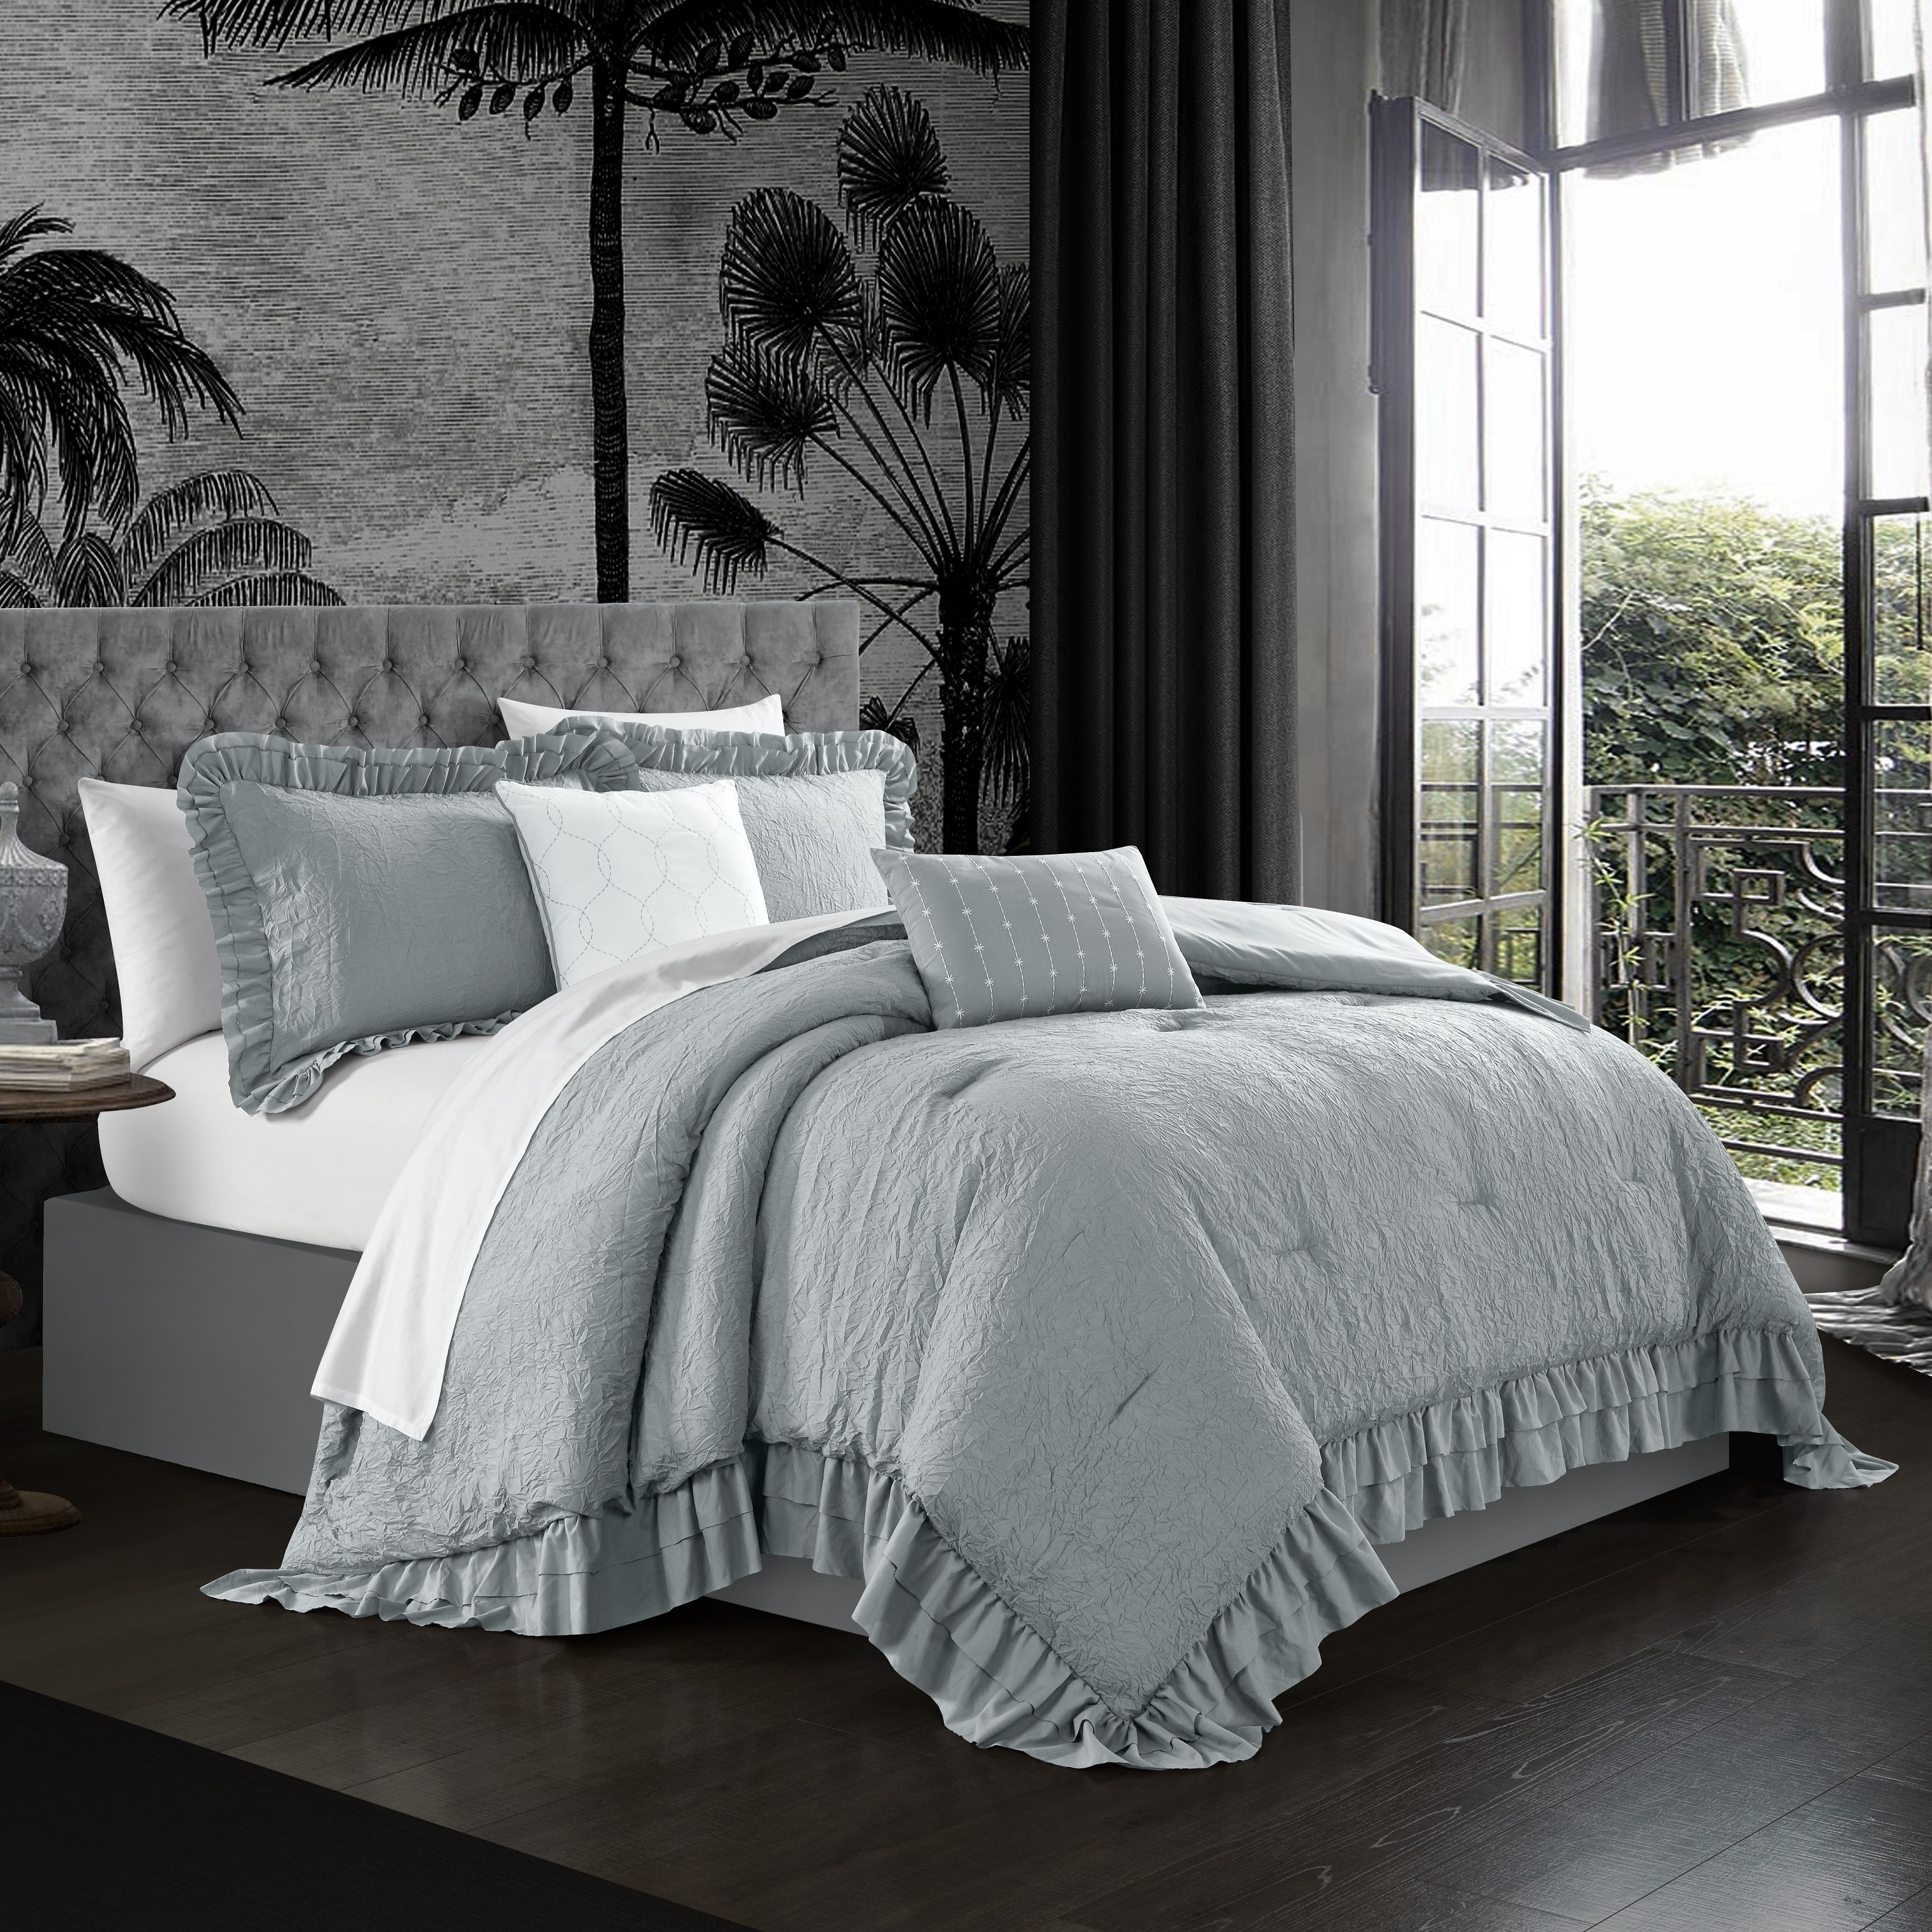 5 Piece Kensley Comforter Set Washed Crinkle Ruffled Flange Border Design Bedding - Blush, Queen